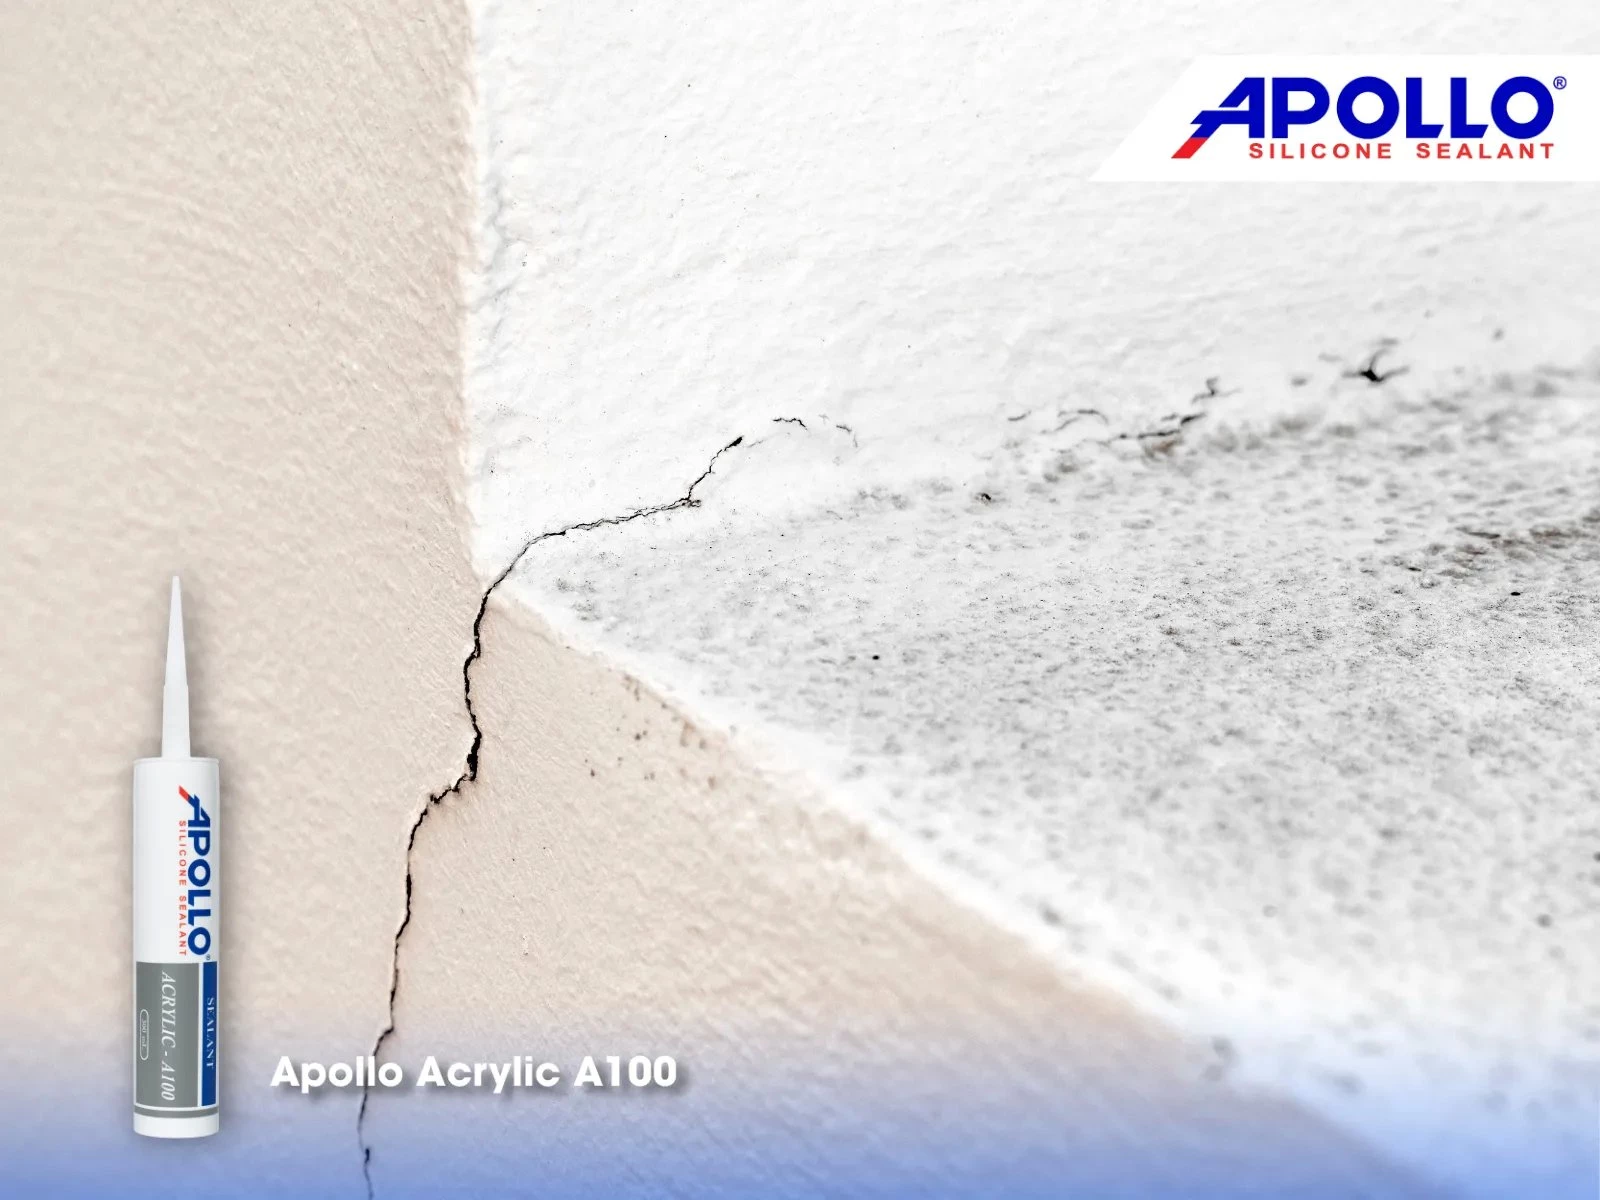 Apollo Acrylic A100 - Giải pháp trám kín khe hở giữa khung cửa sổ và tường nhà